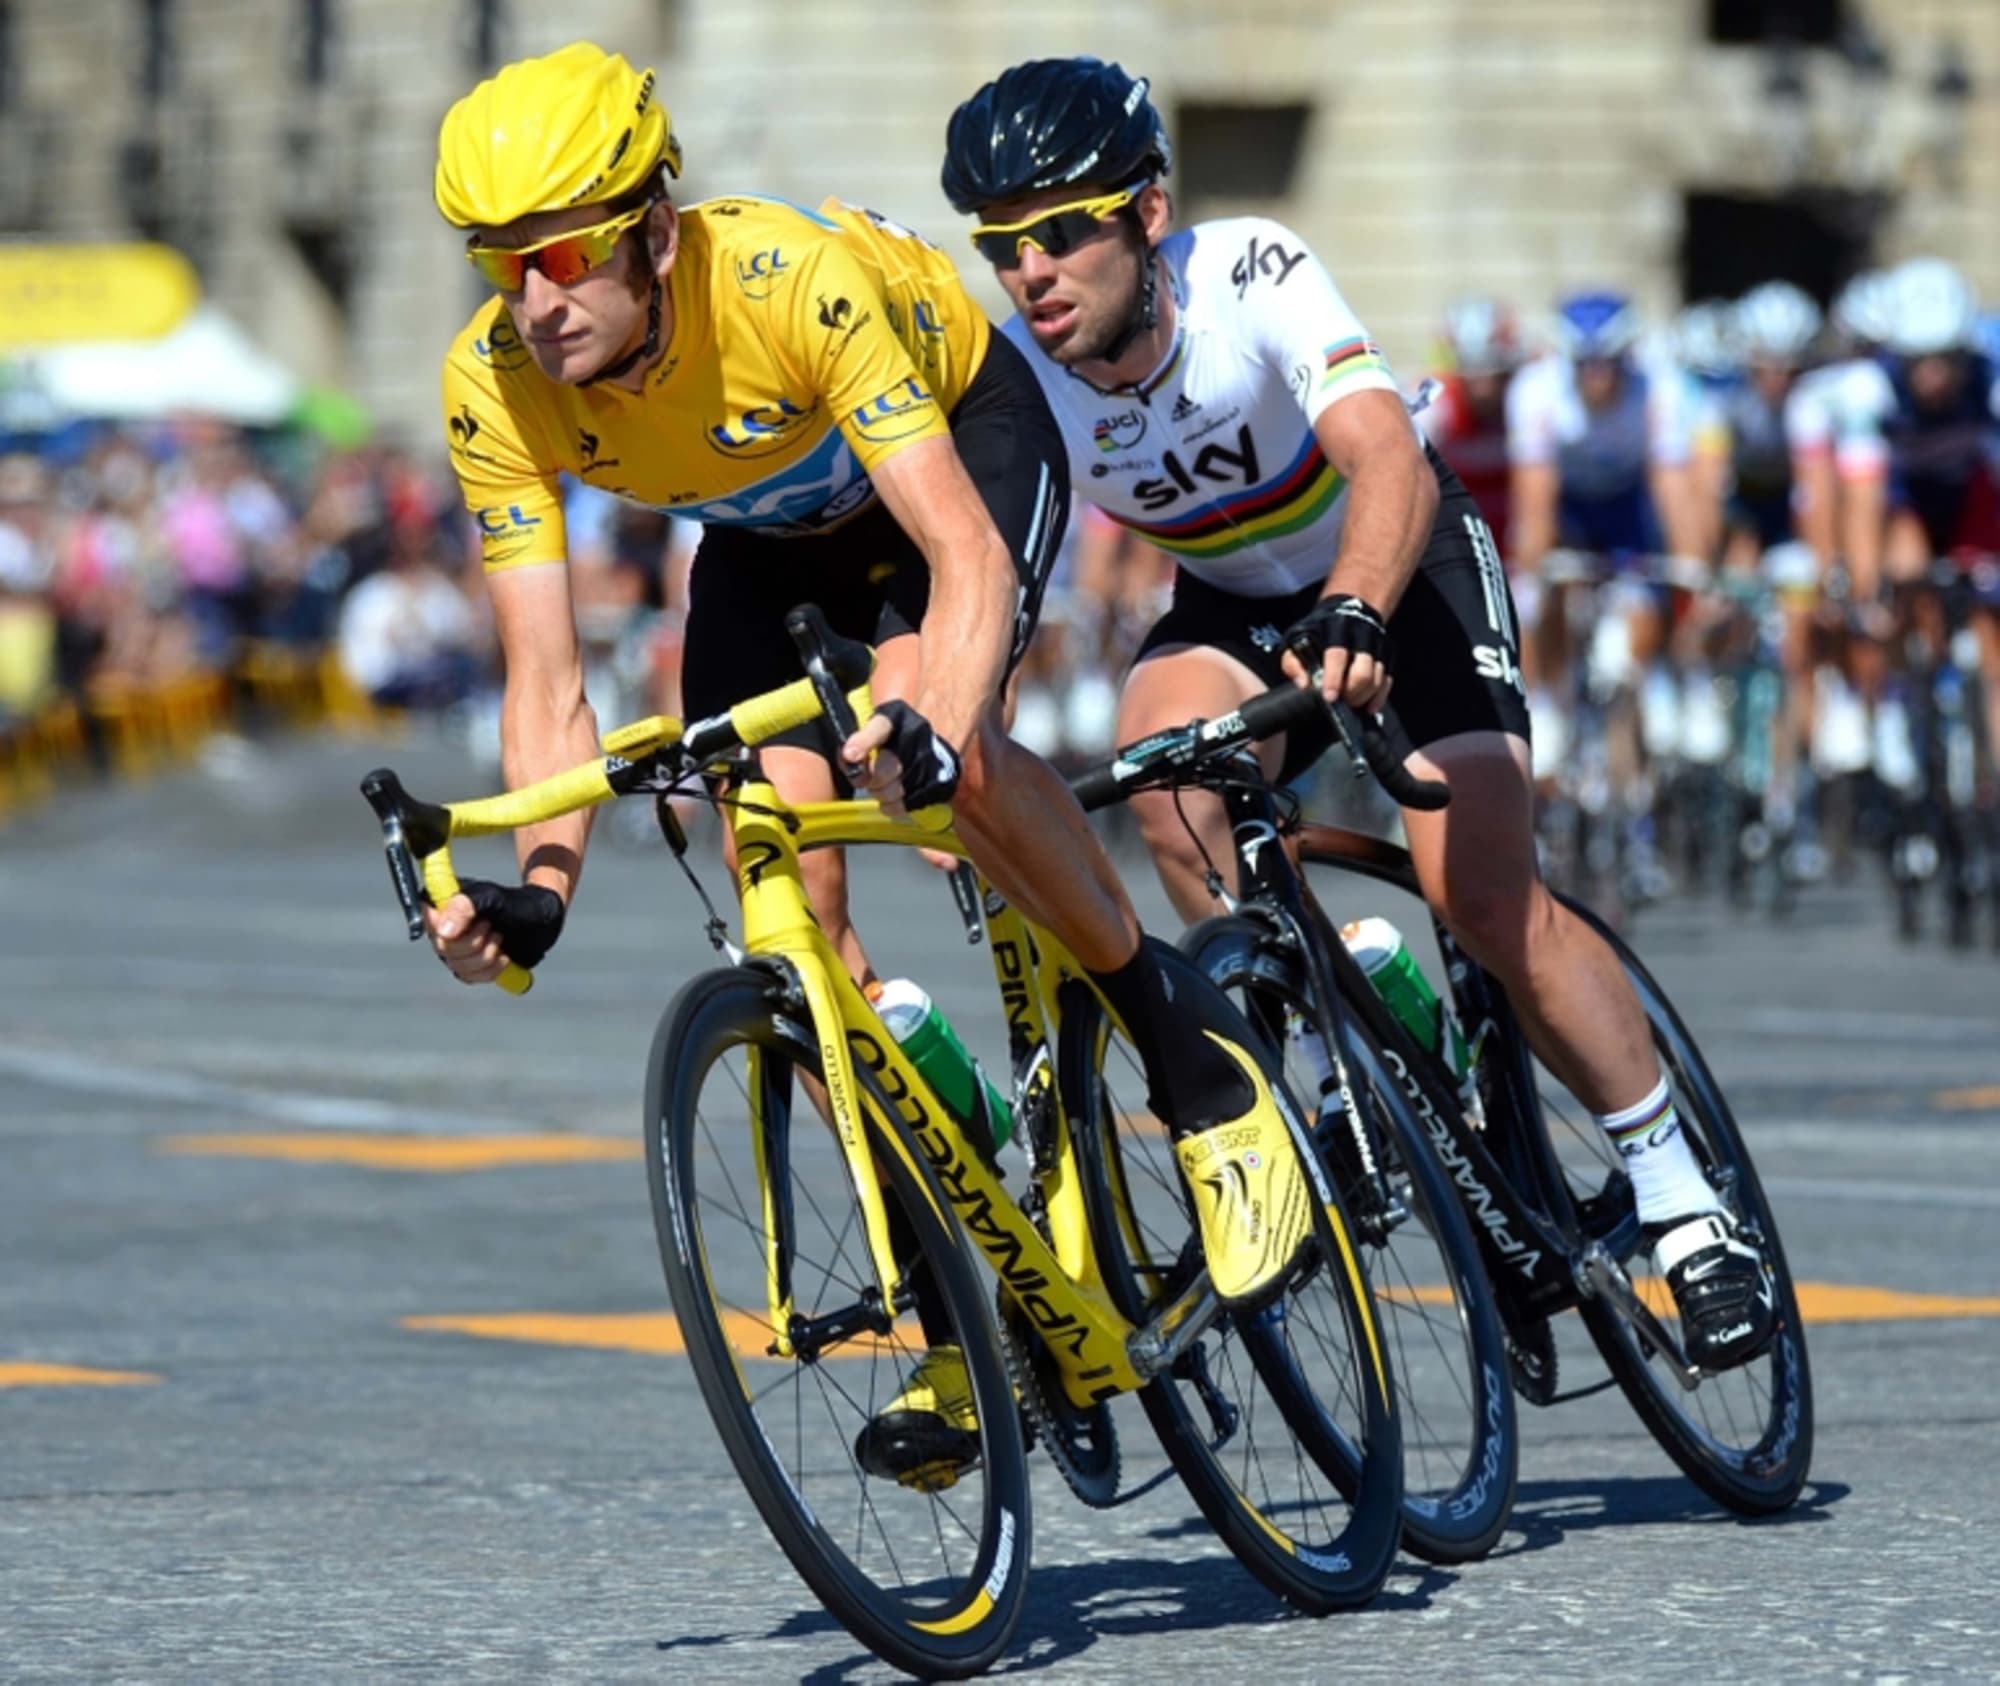 Tour de France 2015 TV schedule